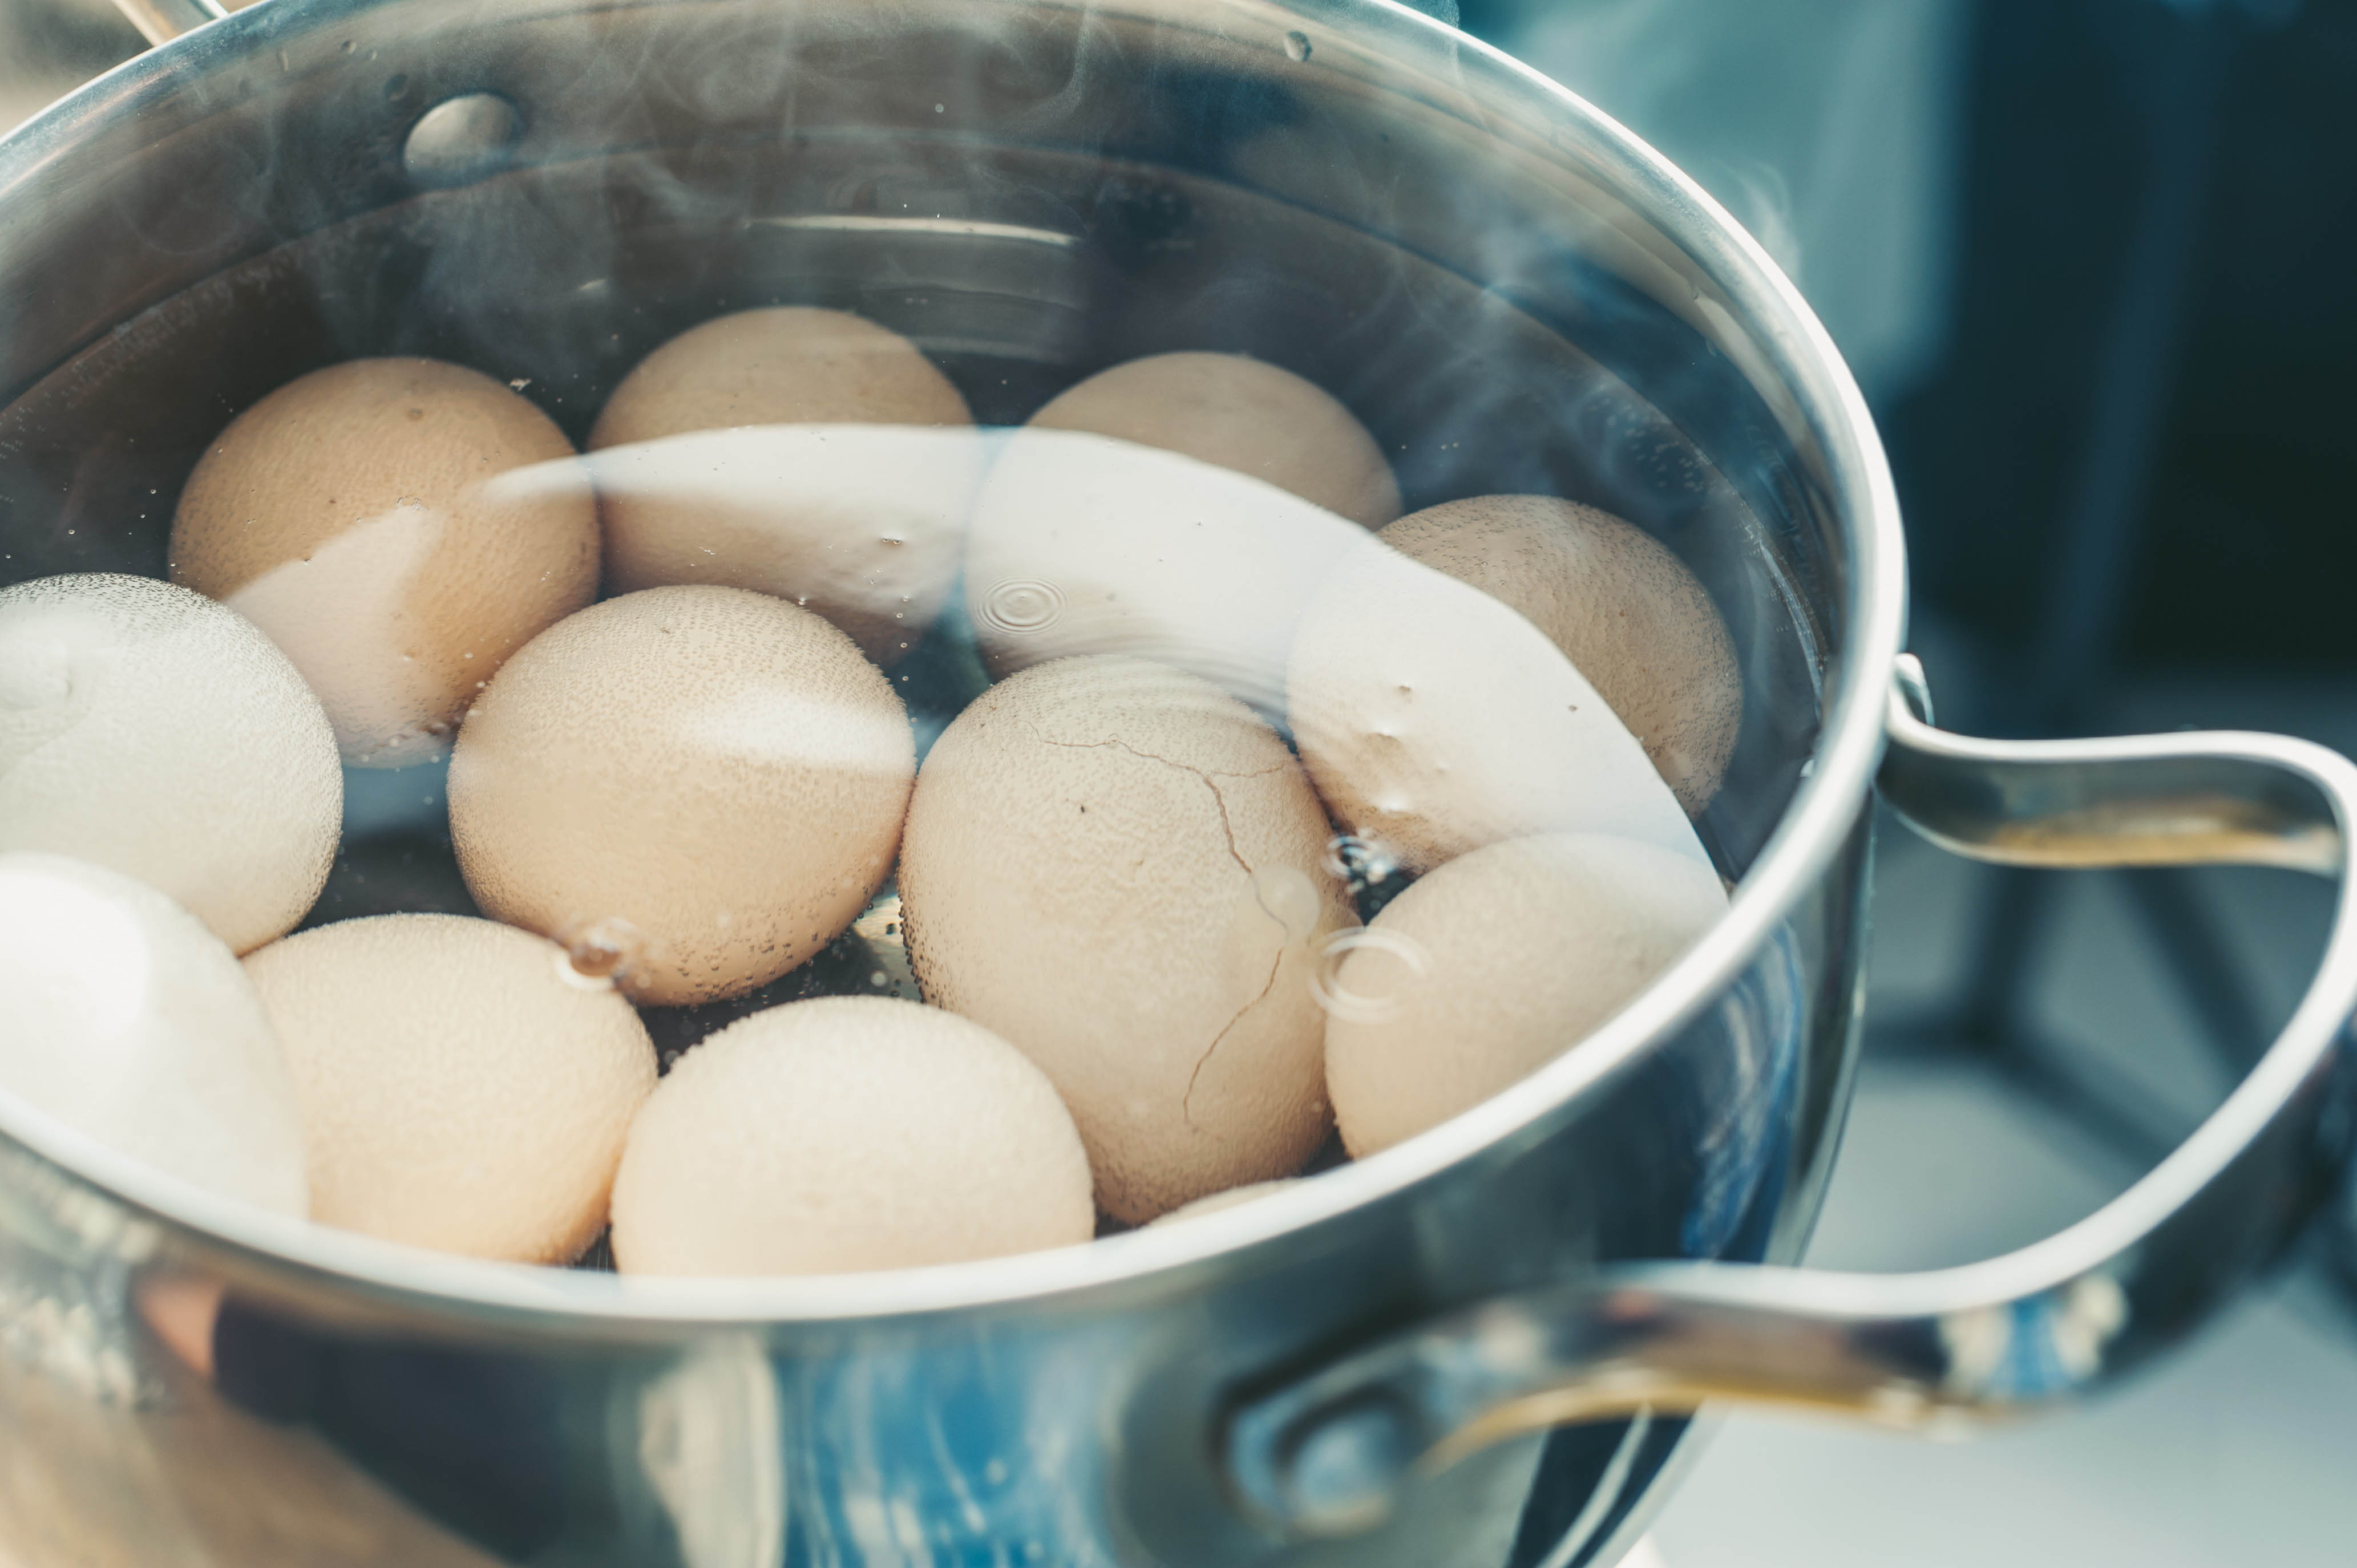 Видео вареные яички. Вареные яйца. Яйца варятся. Яйца в кастрюле. Что приготовить с яйцами.